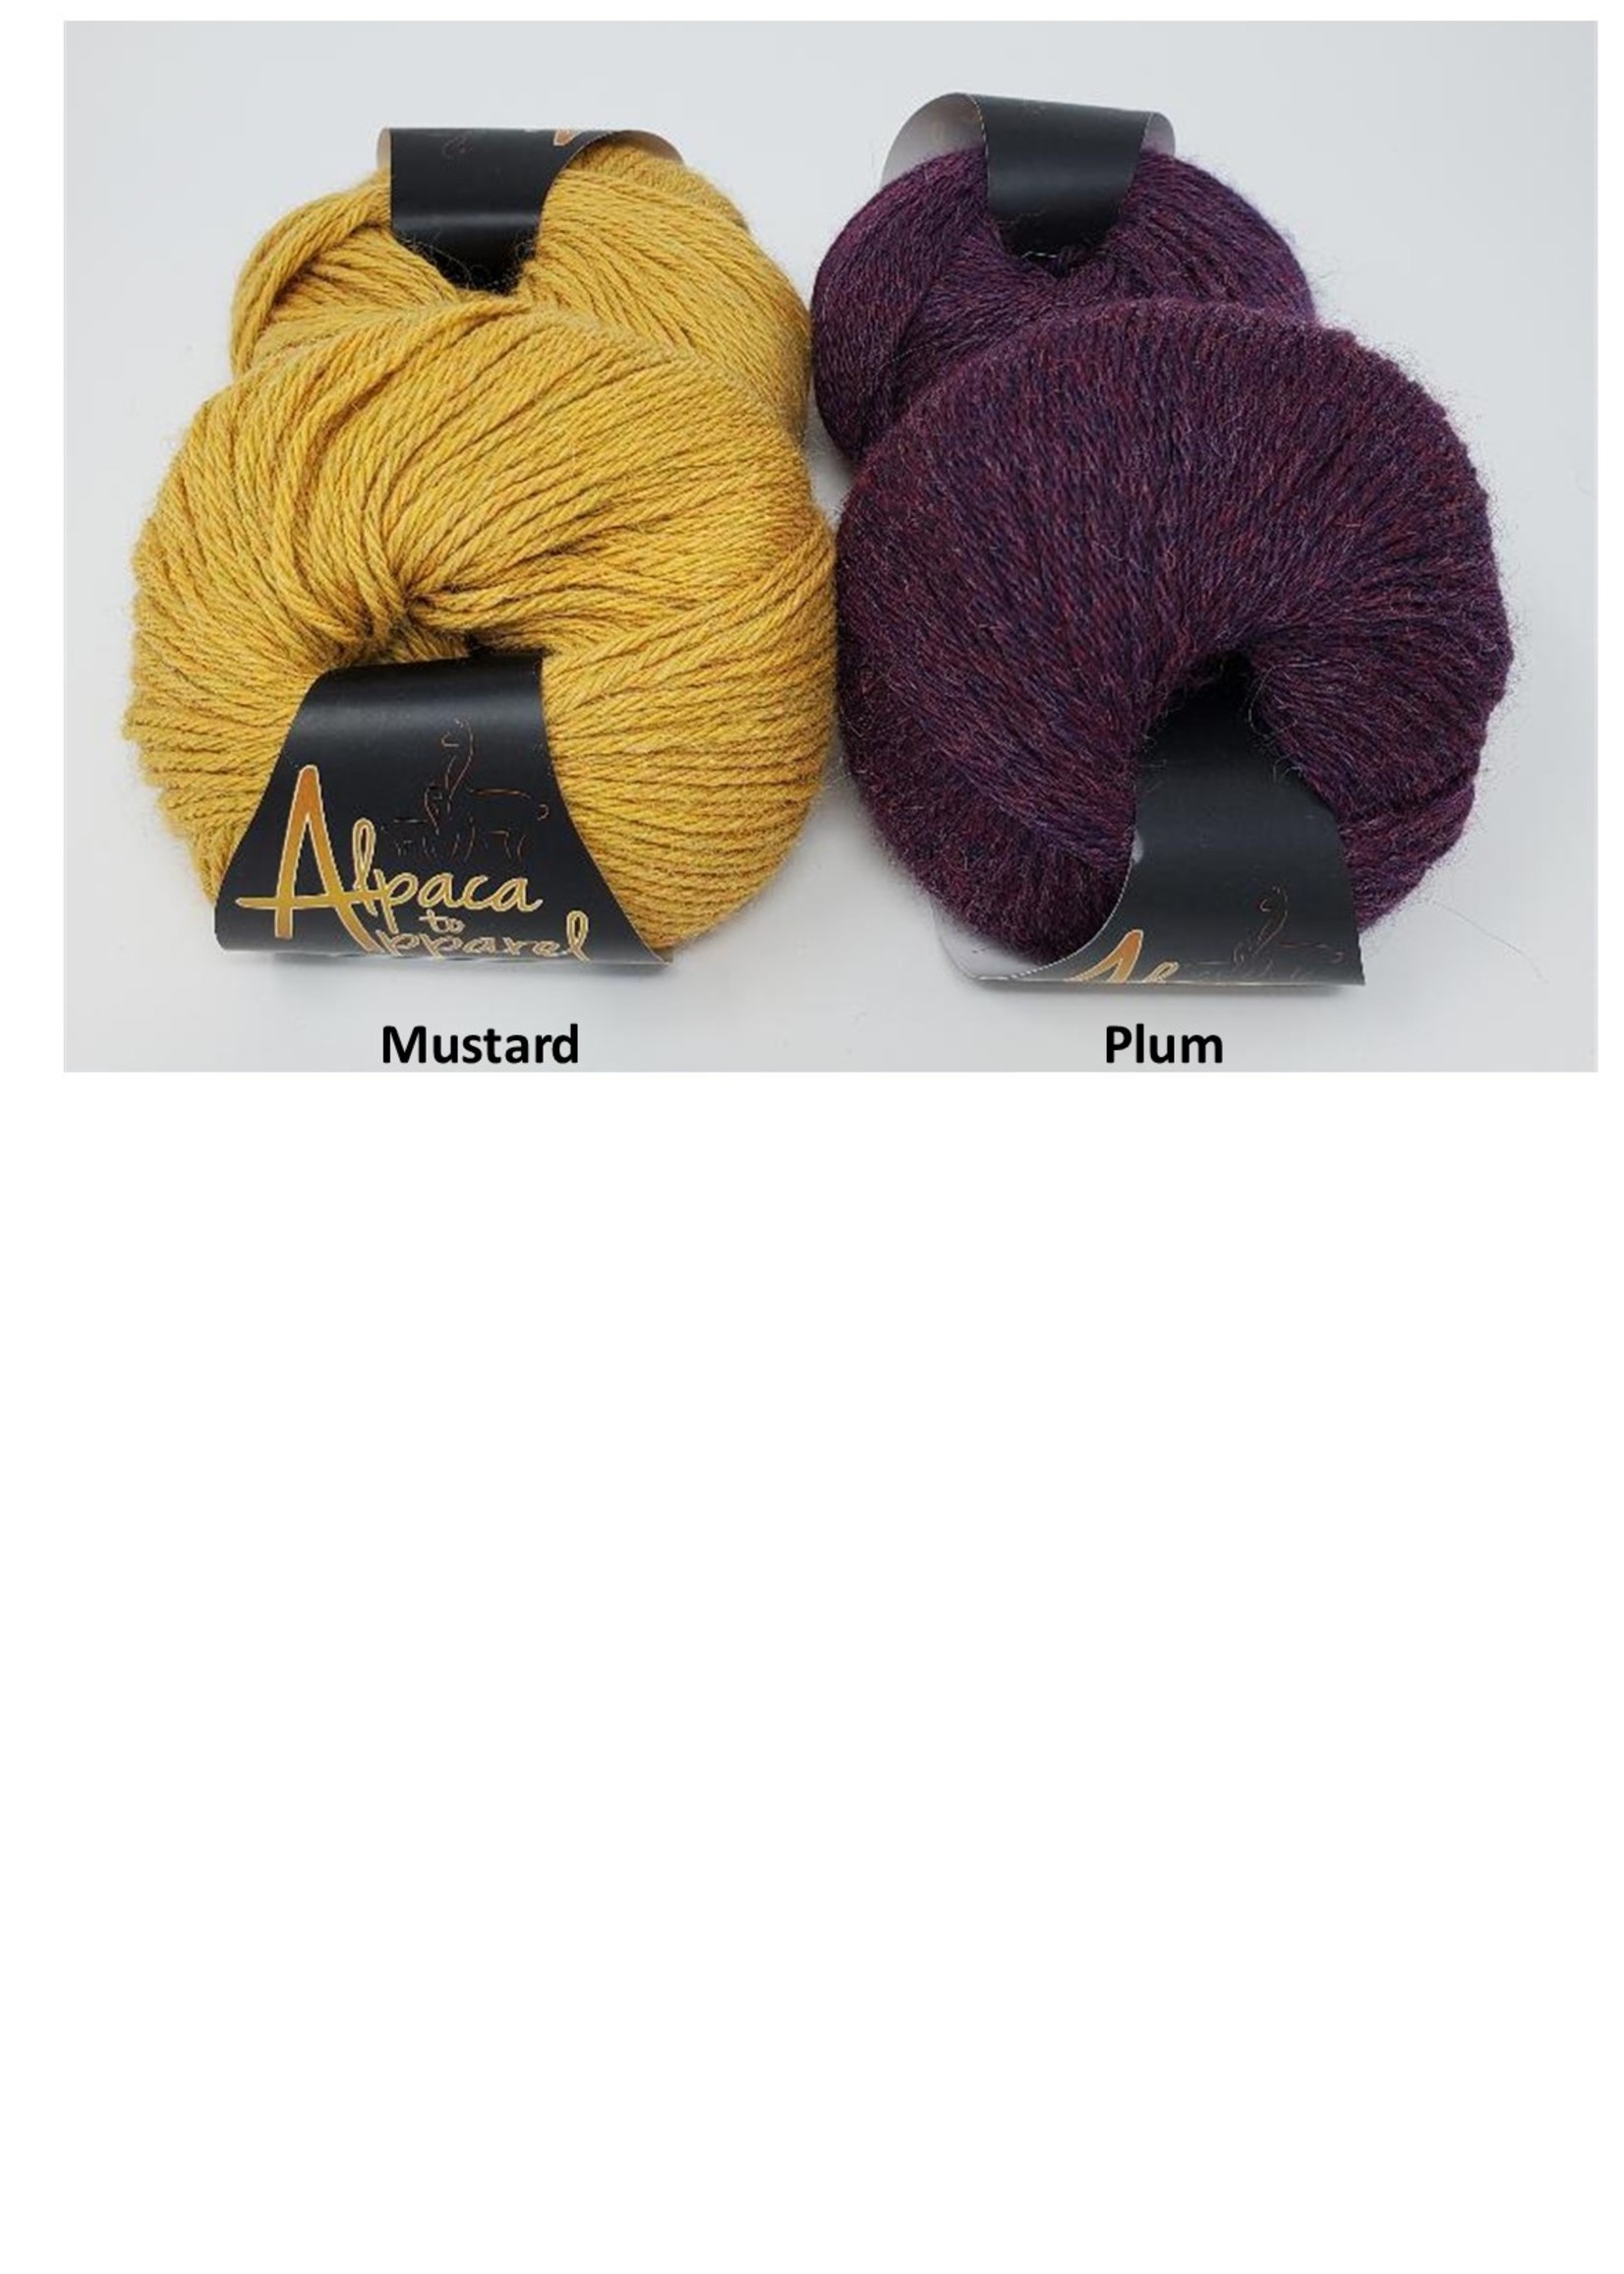 Alpaca Elegance DK Weight Alpaca Yarn for Knitting From 